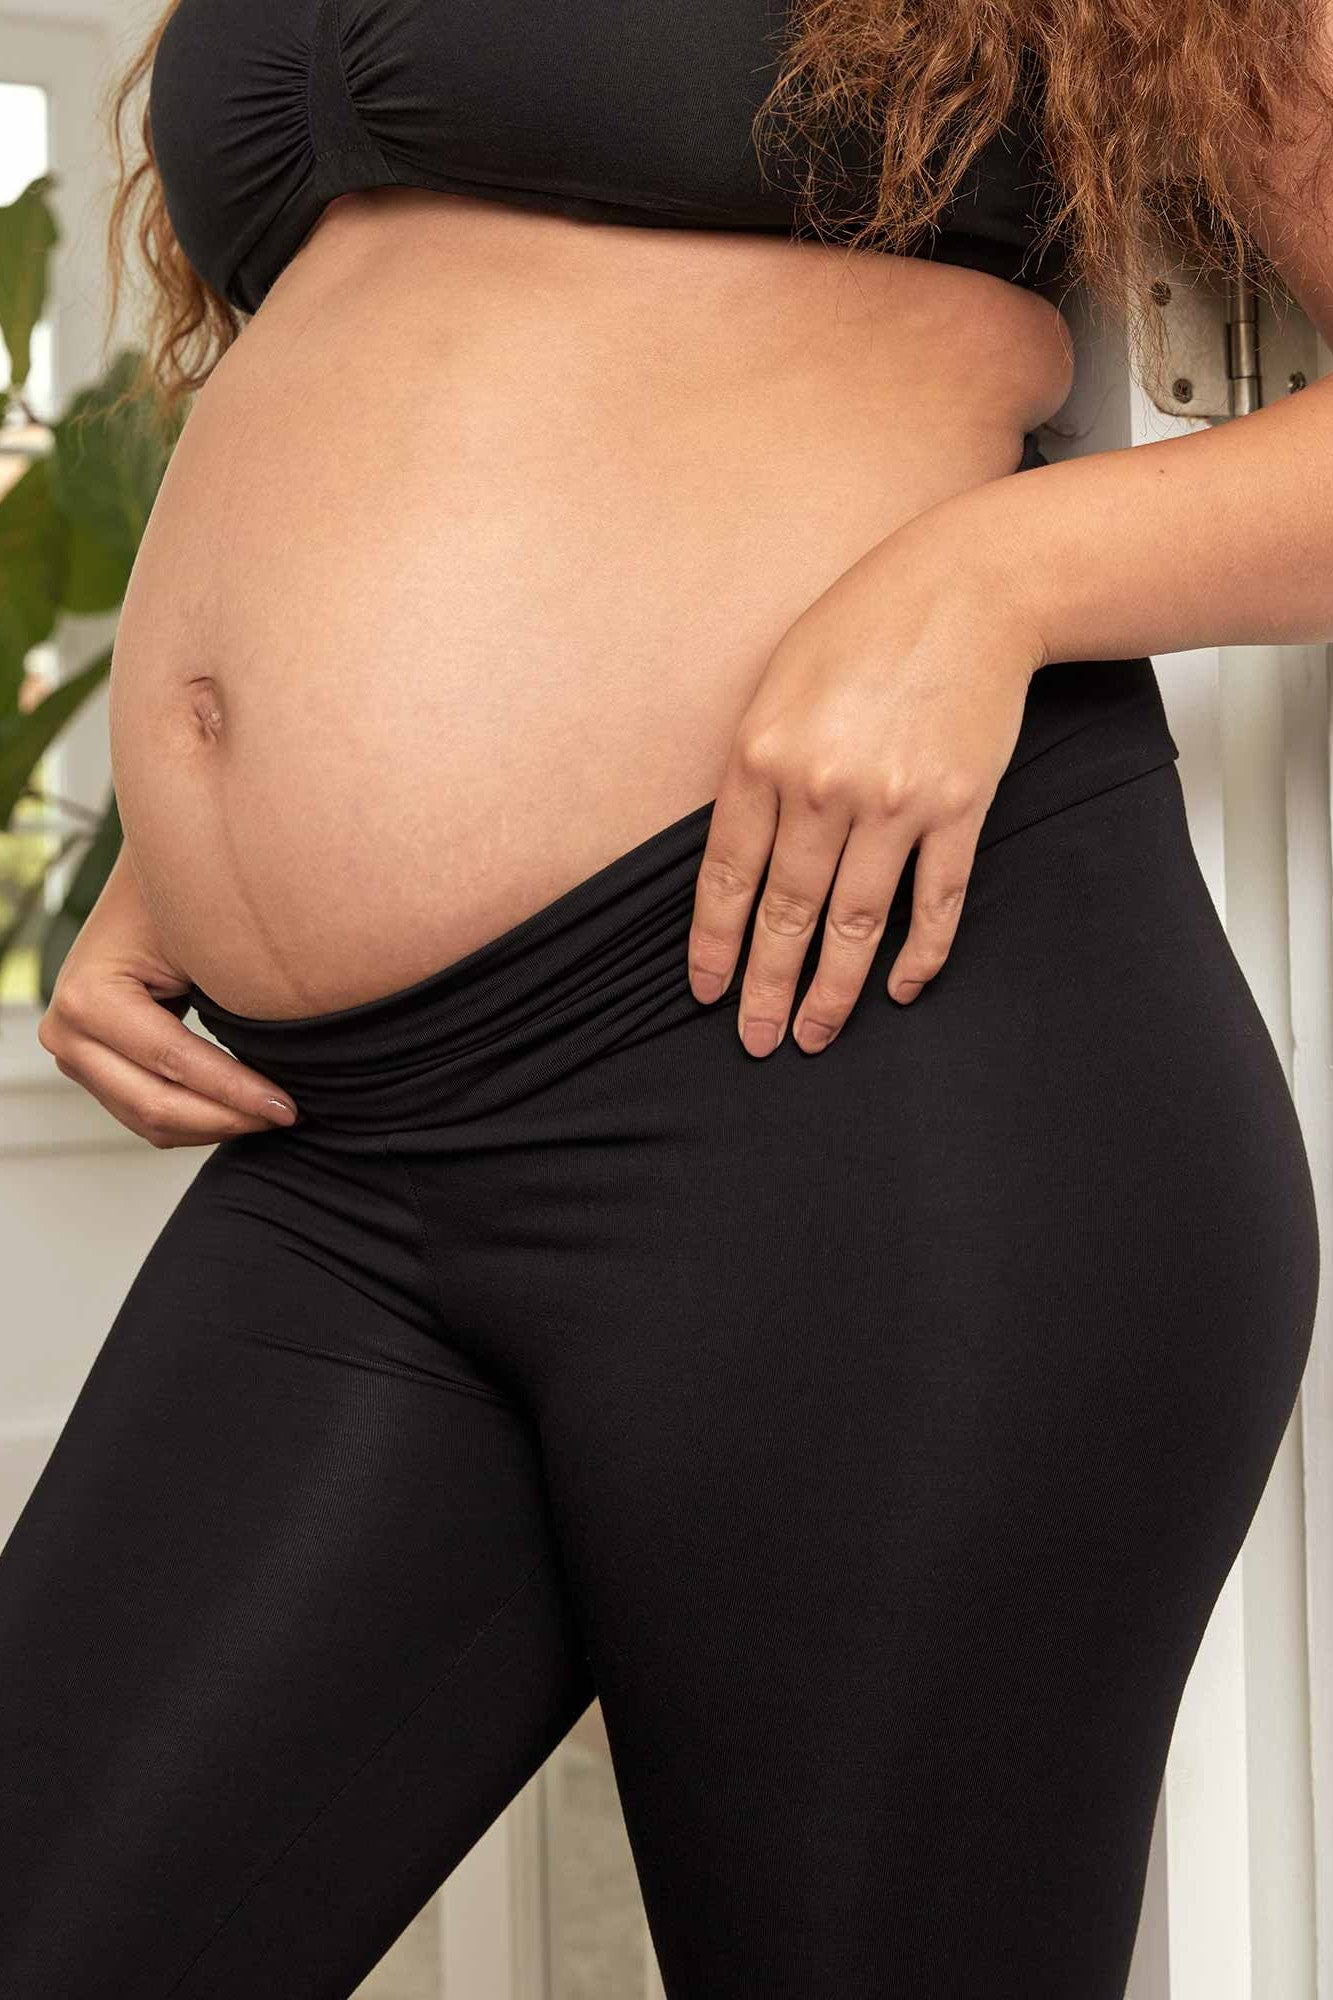 Maternity Leggings - Black, Women's Lifestyle